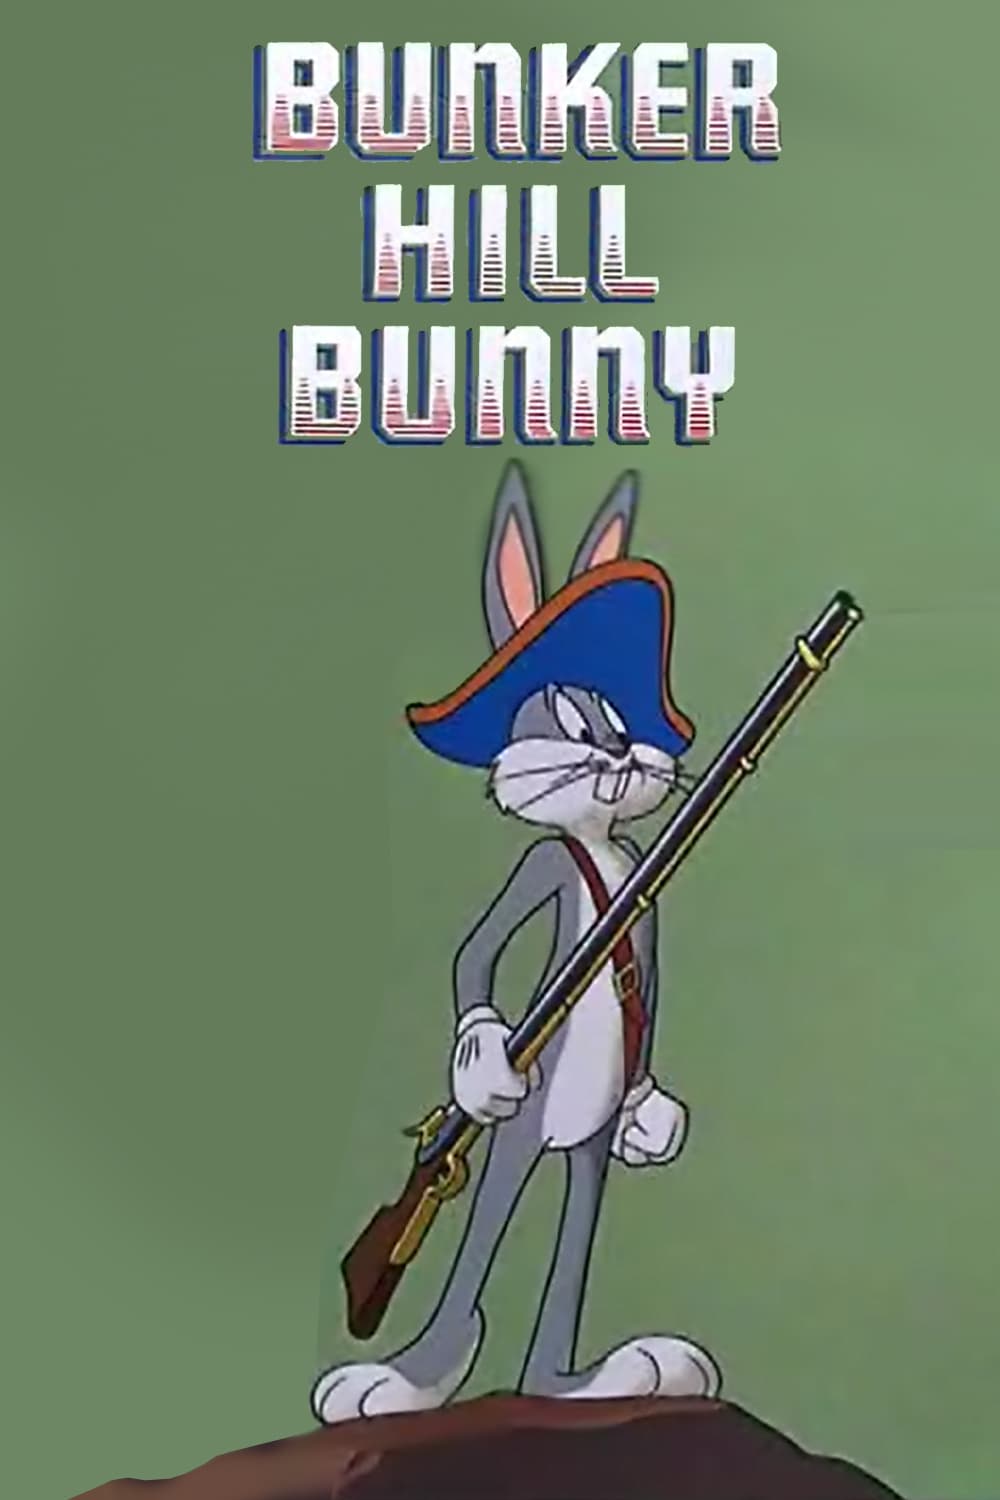 El conejo de Bunker Hill